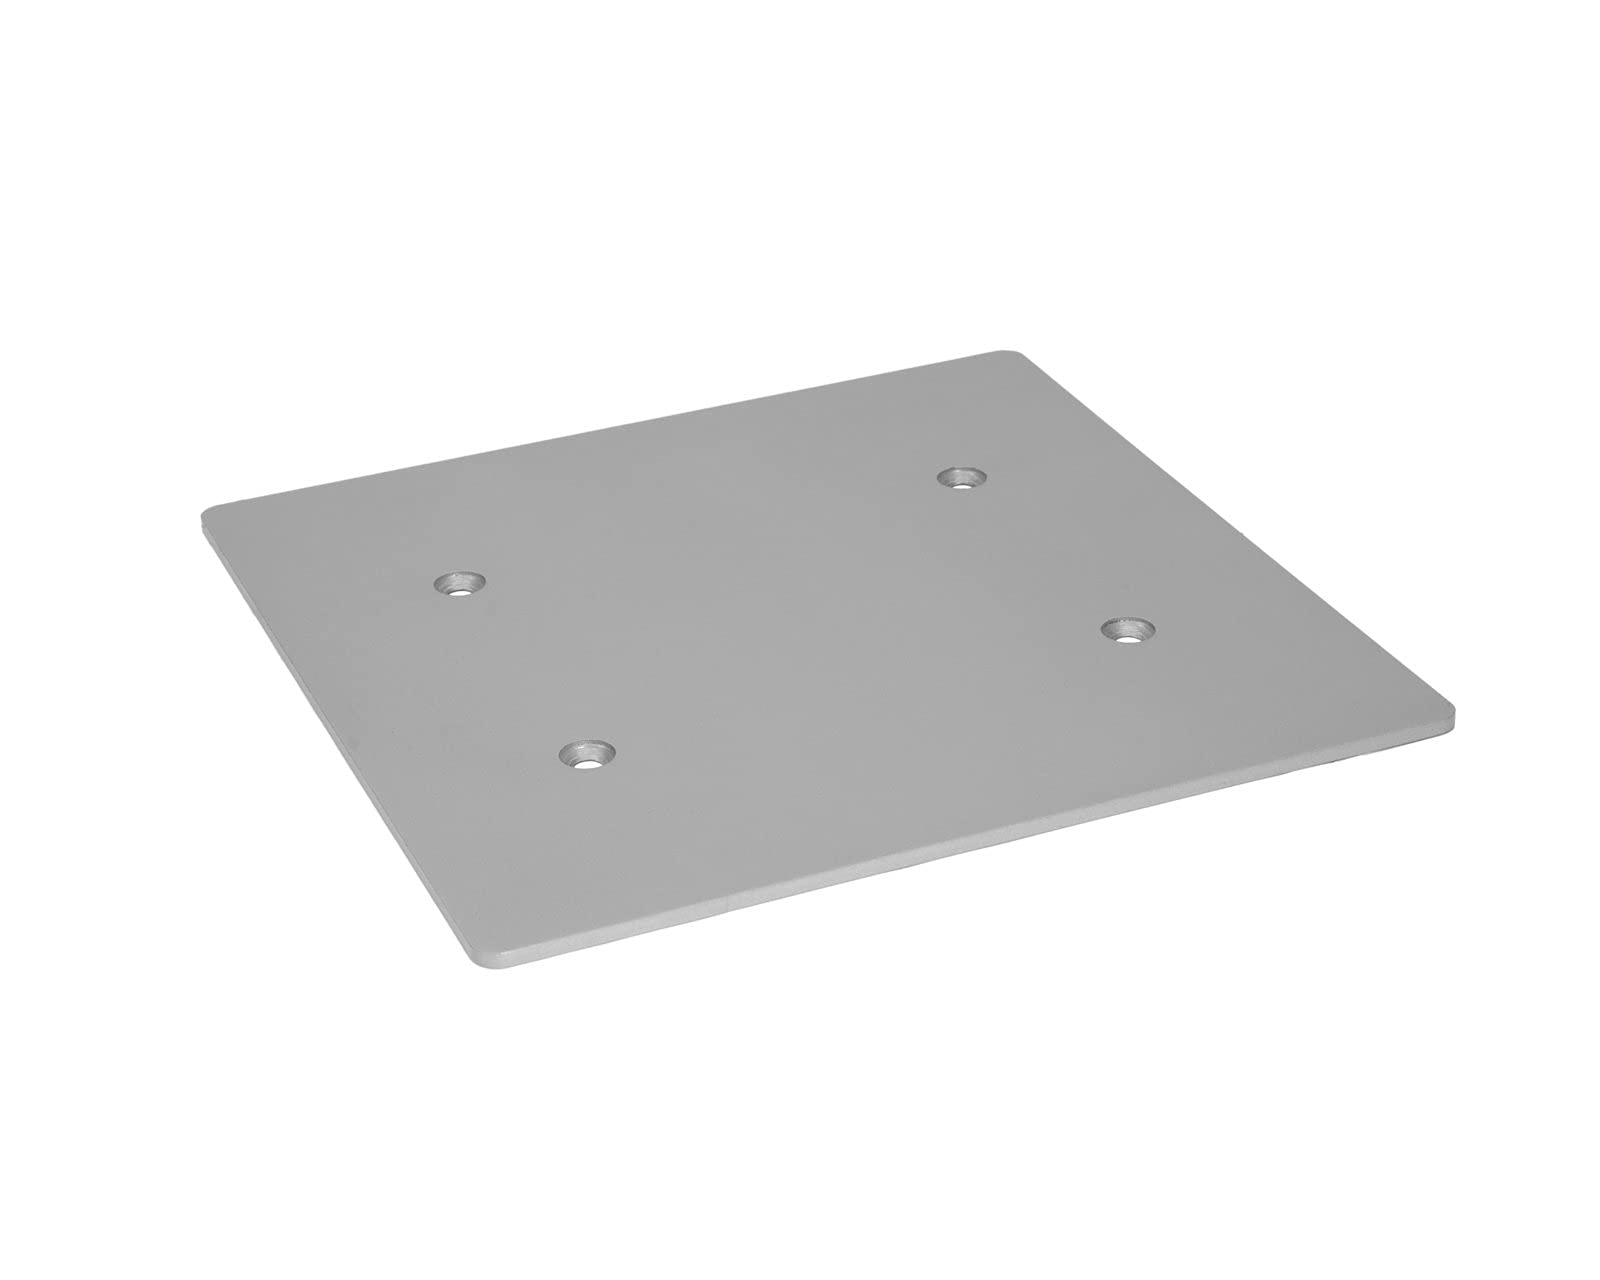 DECOTRUSS Quad Bodenplatte 300 silber | Zubehörelement für DECOTRUSS Quad - dem dekorativen Traversensystem